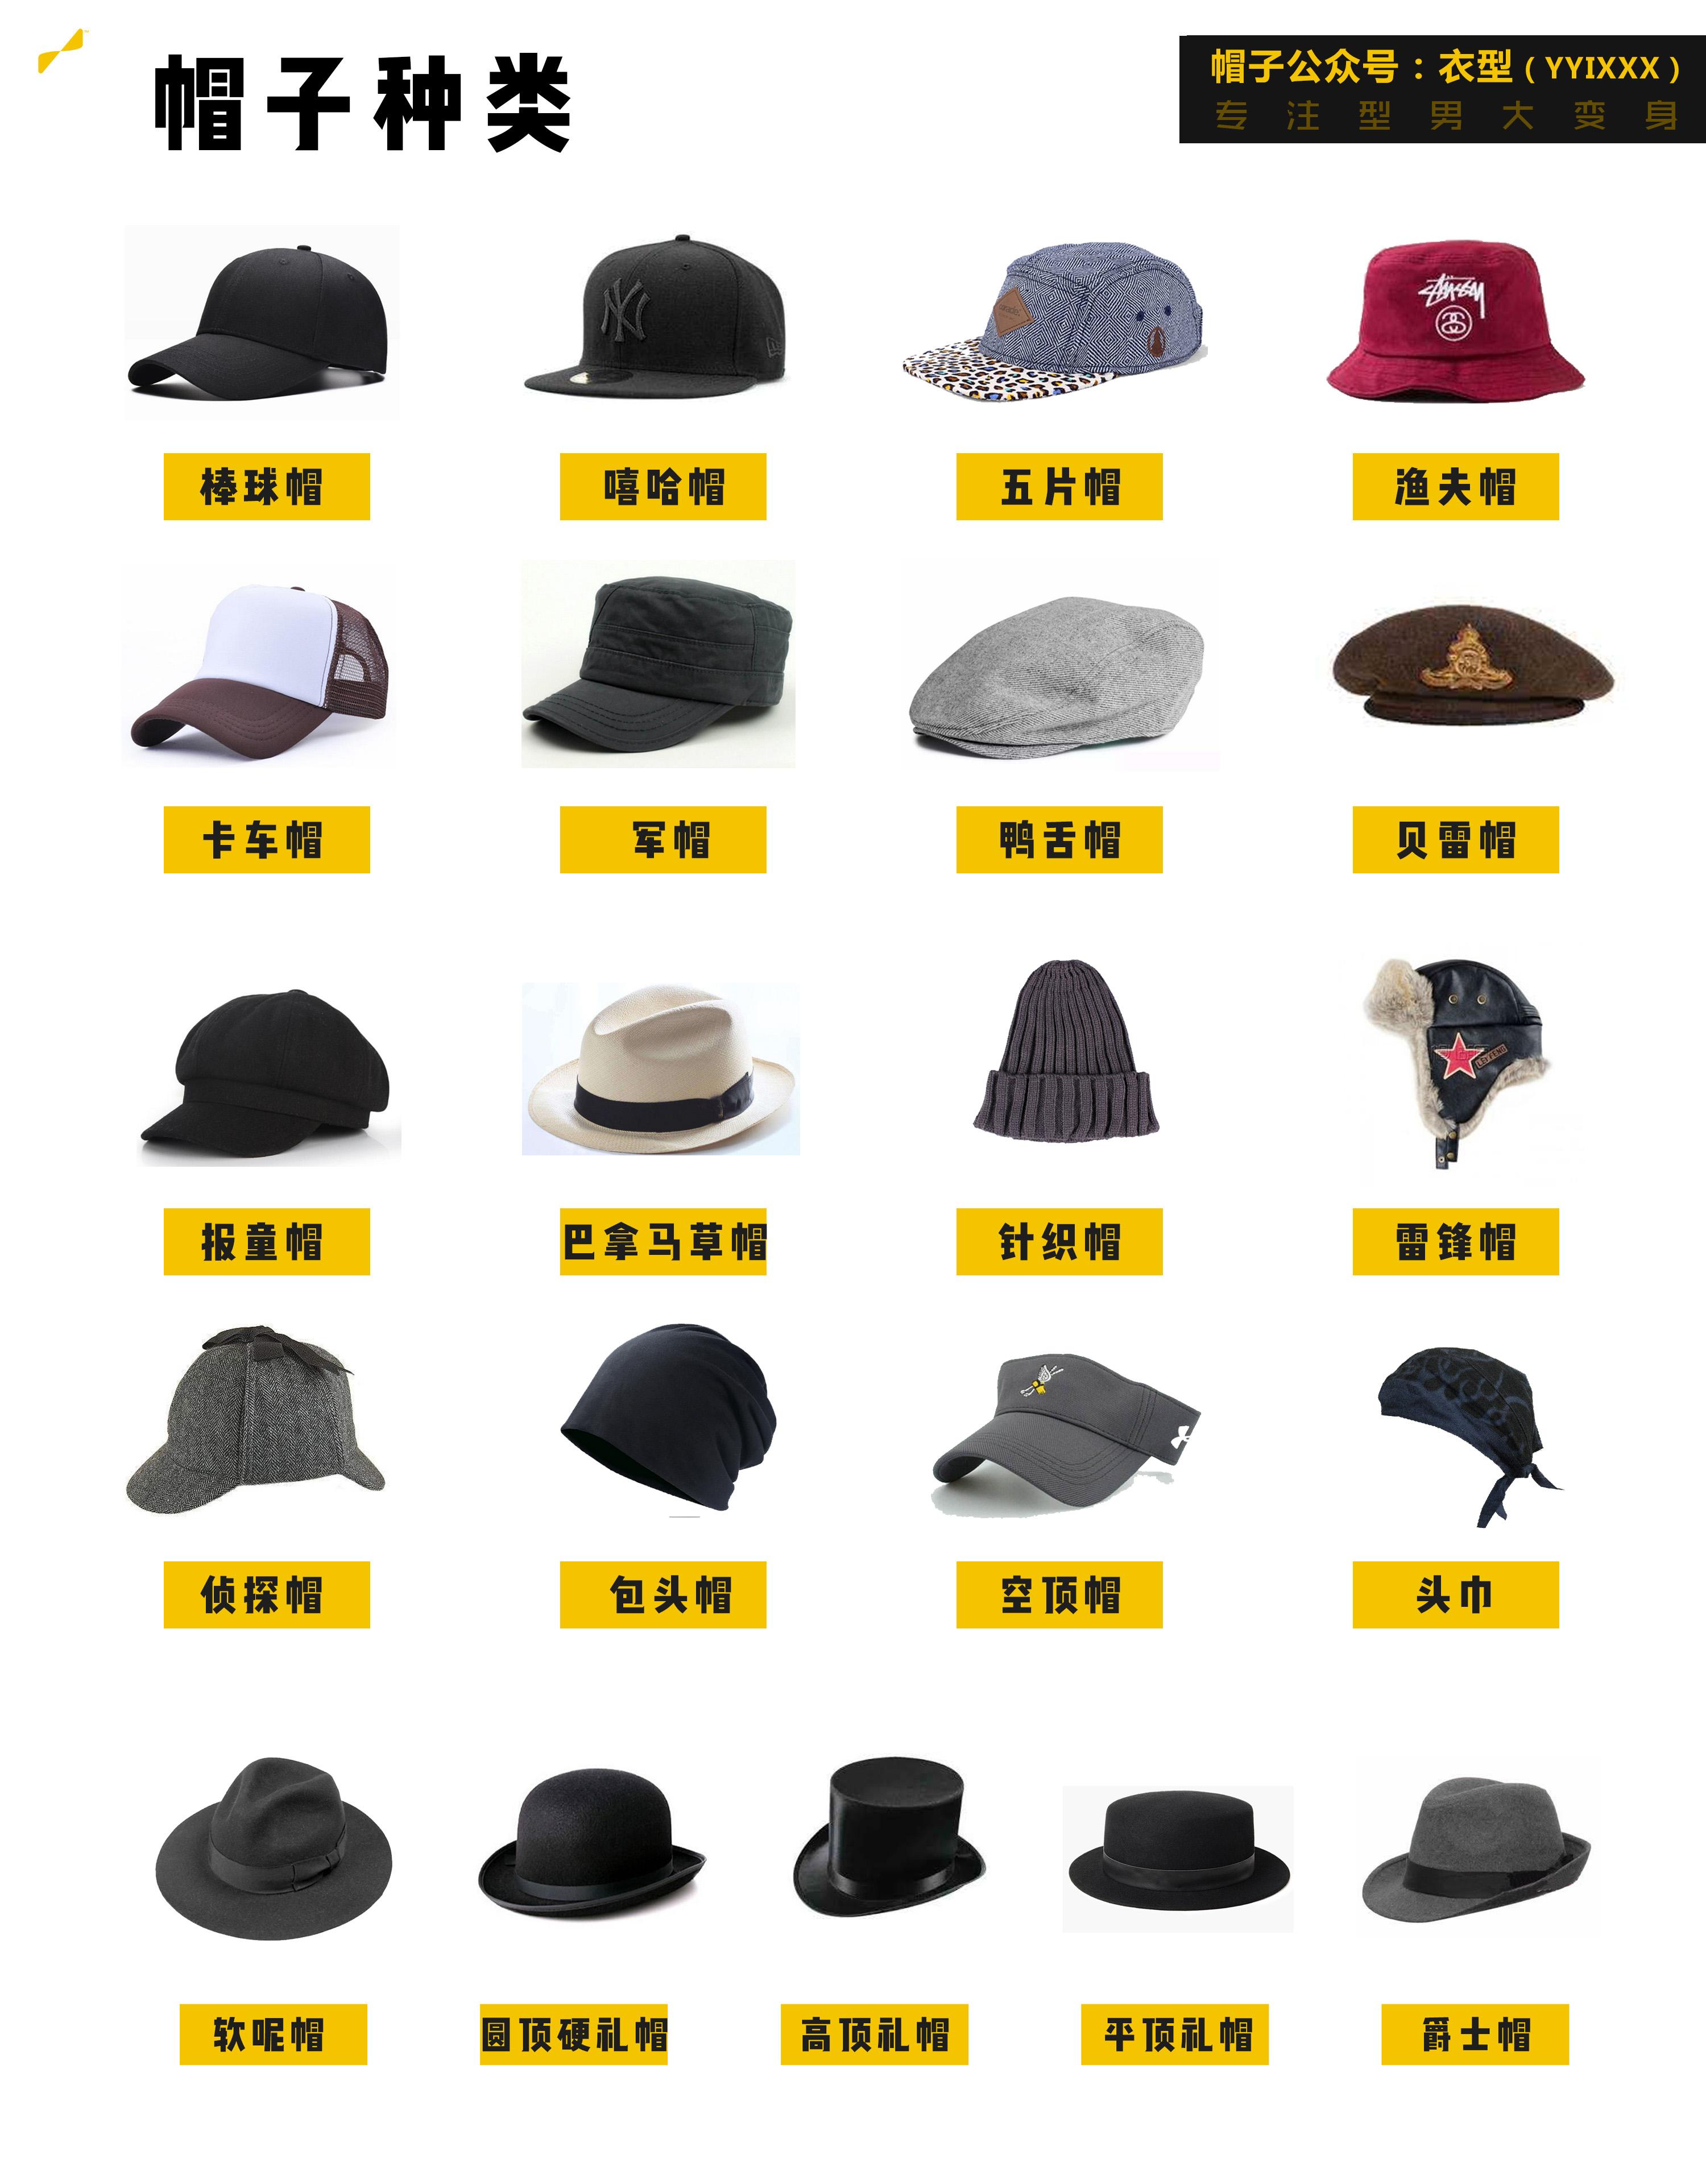 男生如何选择帽子？有哪些好看百搭、基础款的帽子推荐 - 知乎